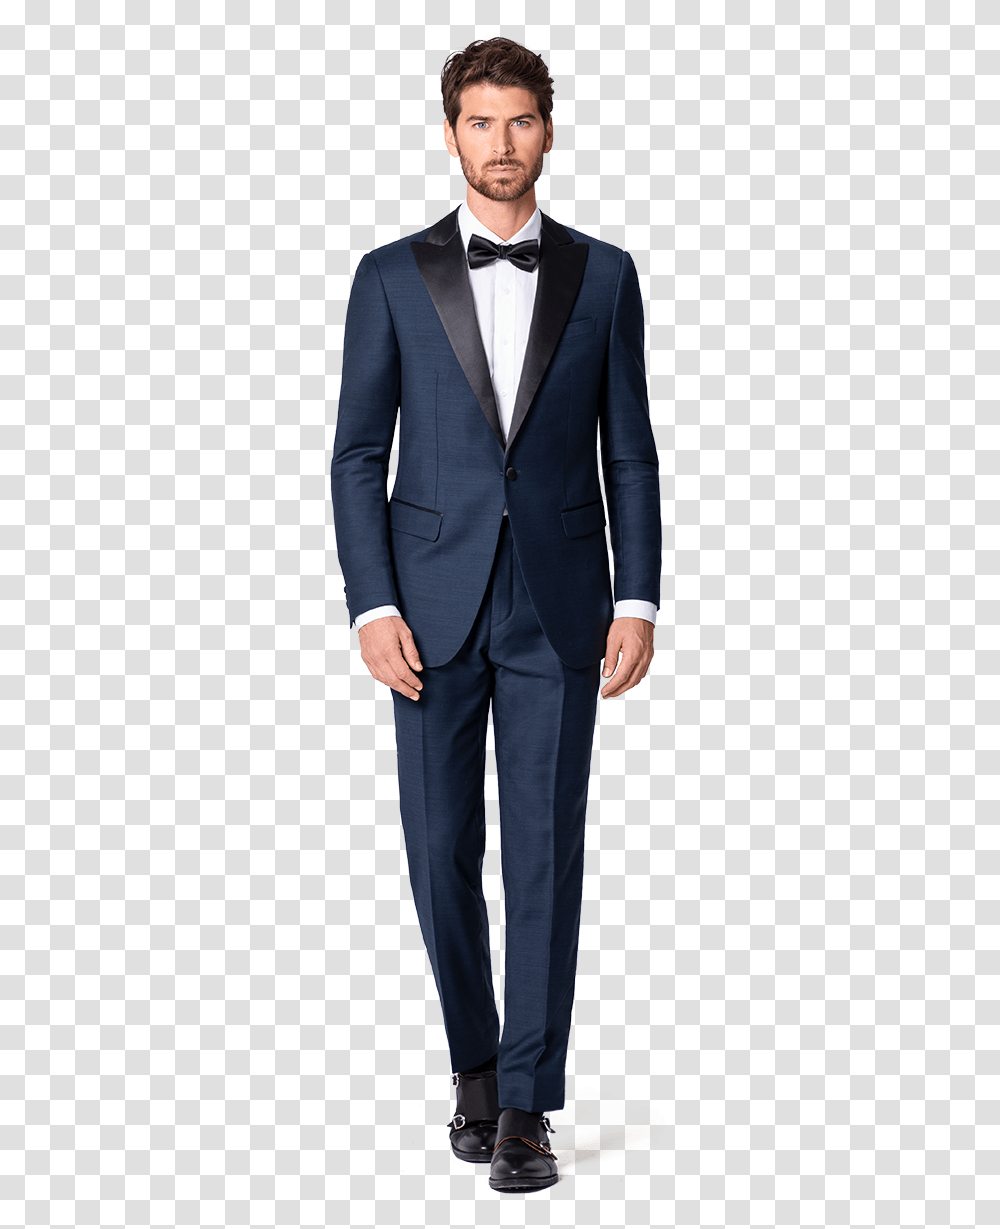 Custom Tuxedo Smoking Da Uomo, Suit, Overcoat, Person Transparent Png